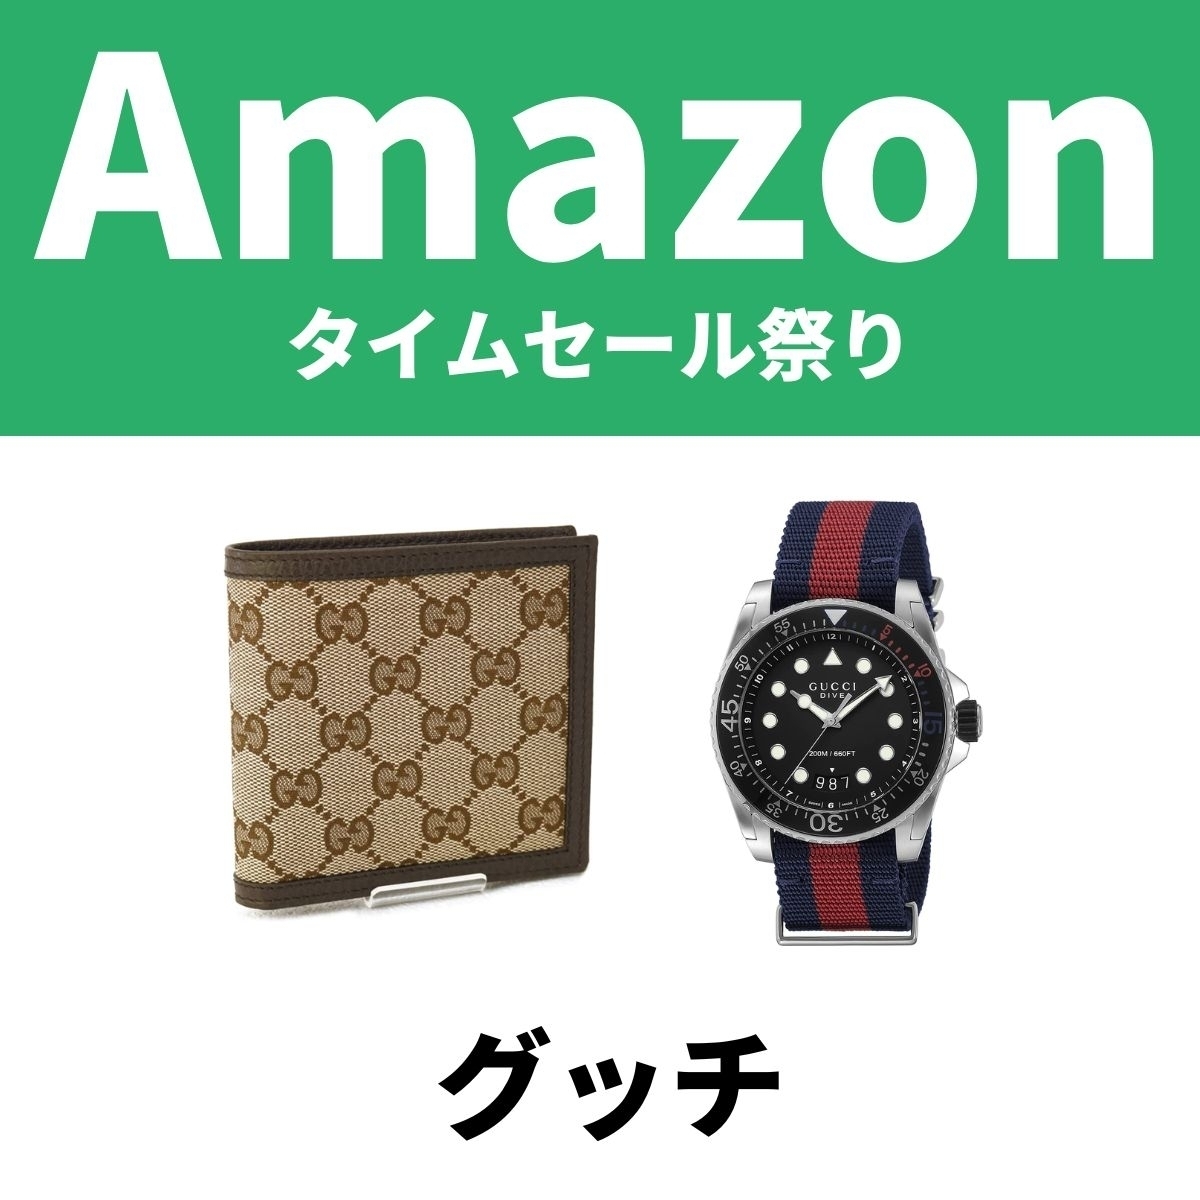 グッチの財布や腕時計がAmazonタイムセール祭り 自分へのご褒美買っ